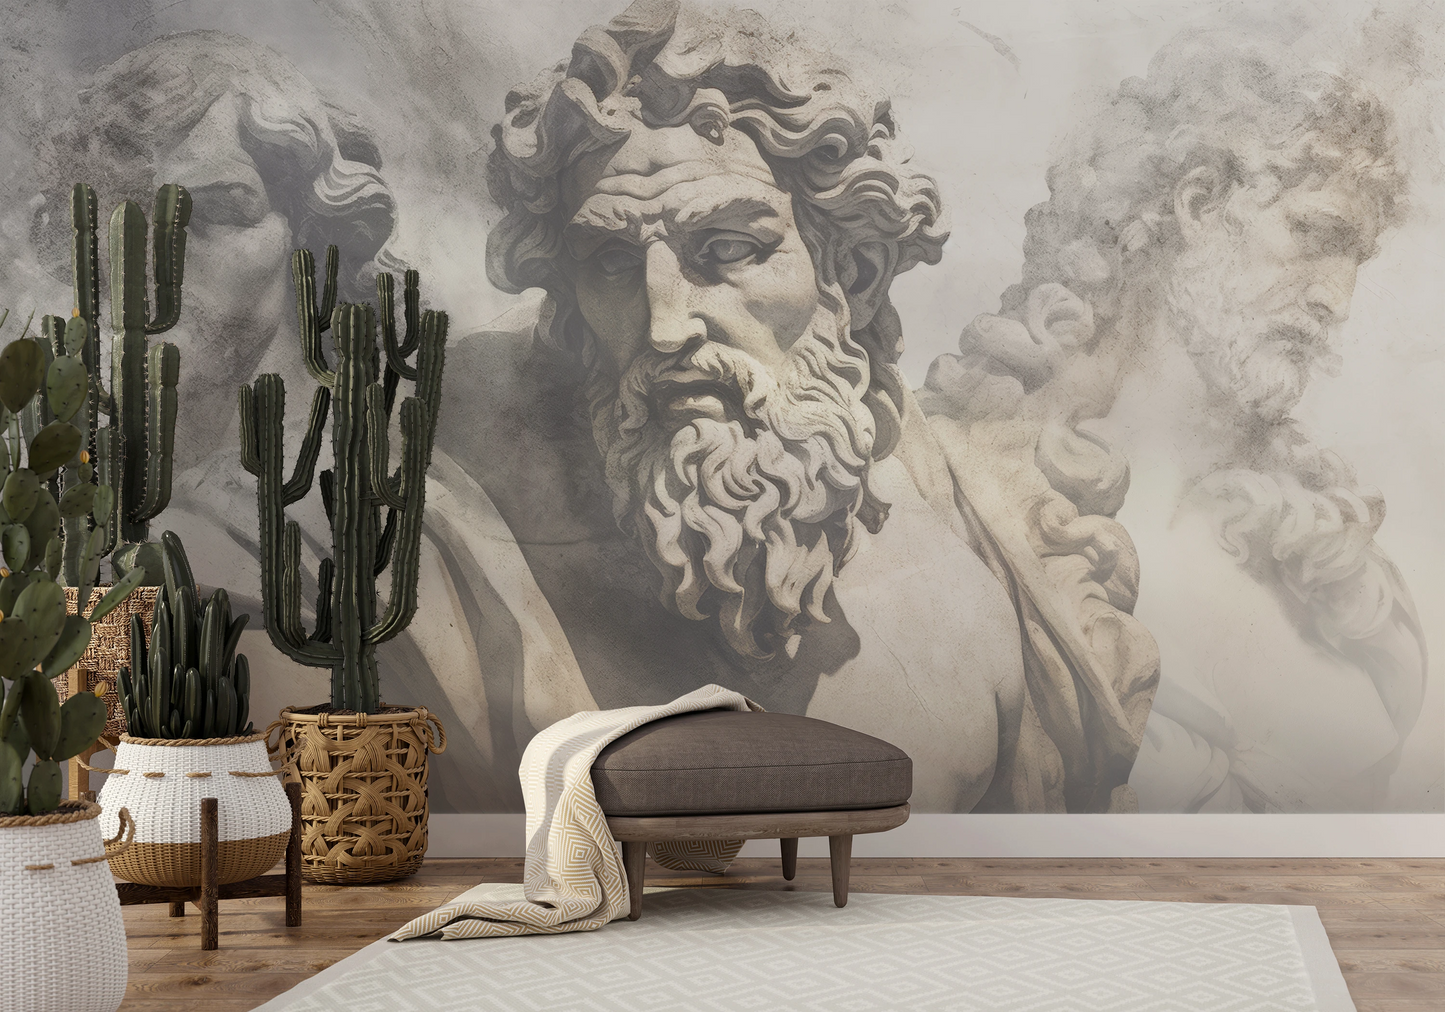 Fototapeta malowana o nazwie Zeus's Contemplation pokazana w aranżacji wnętrza.